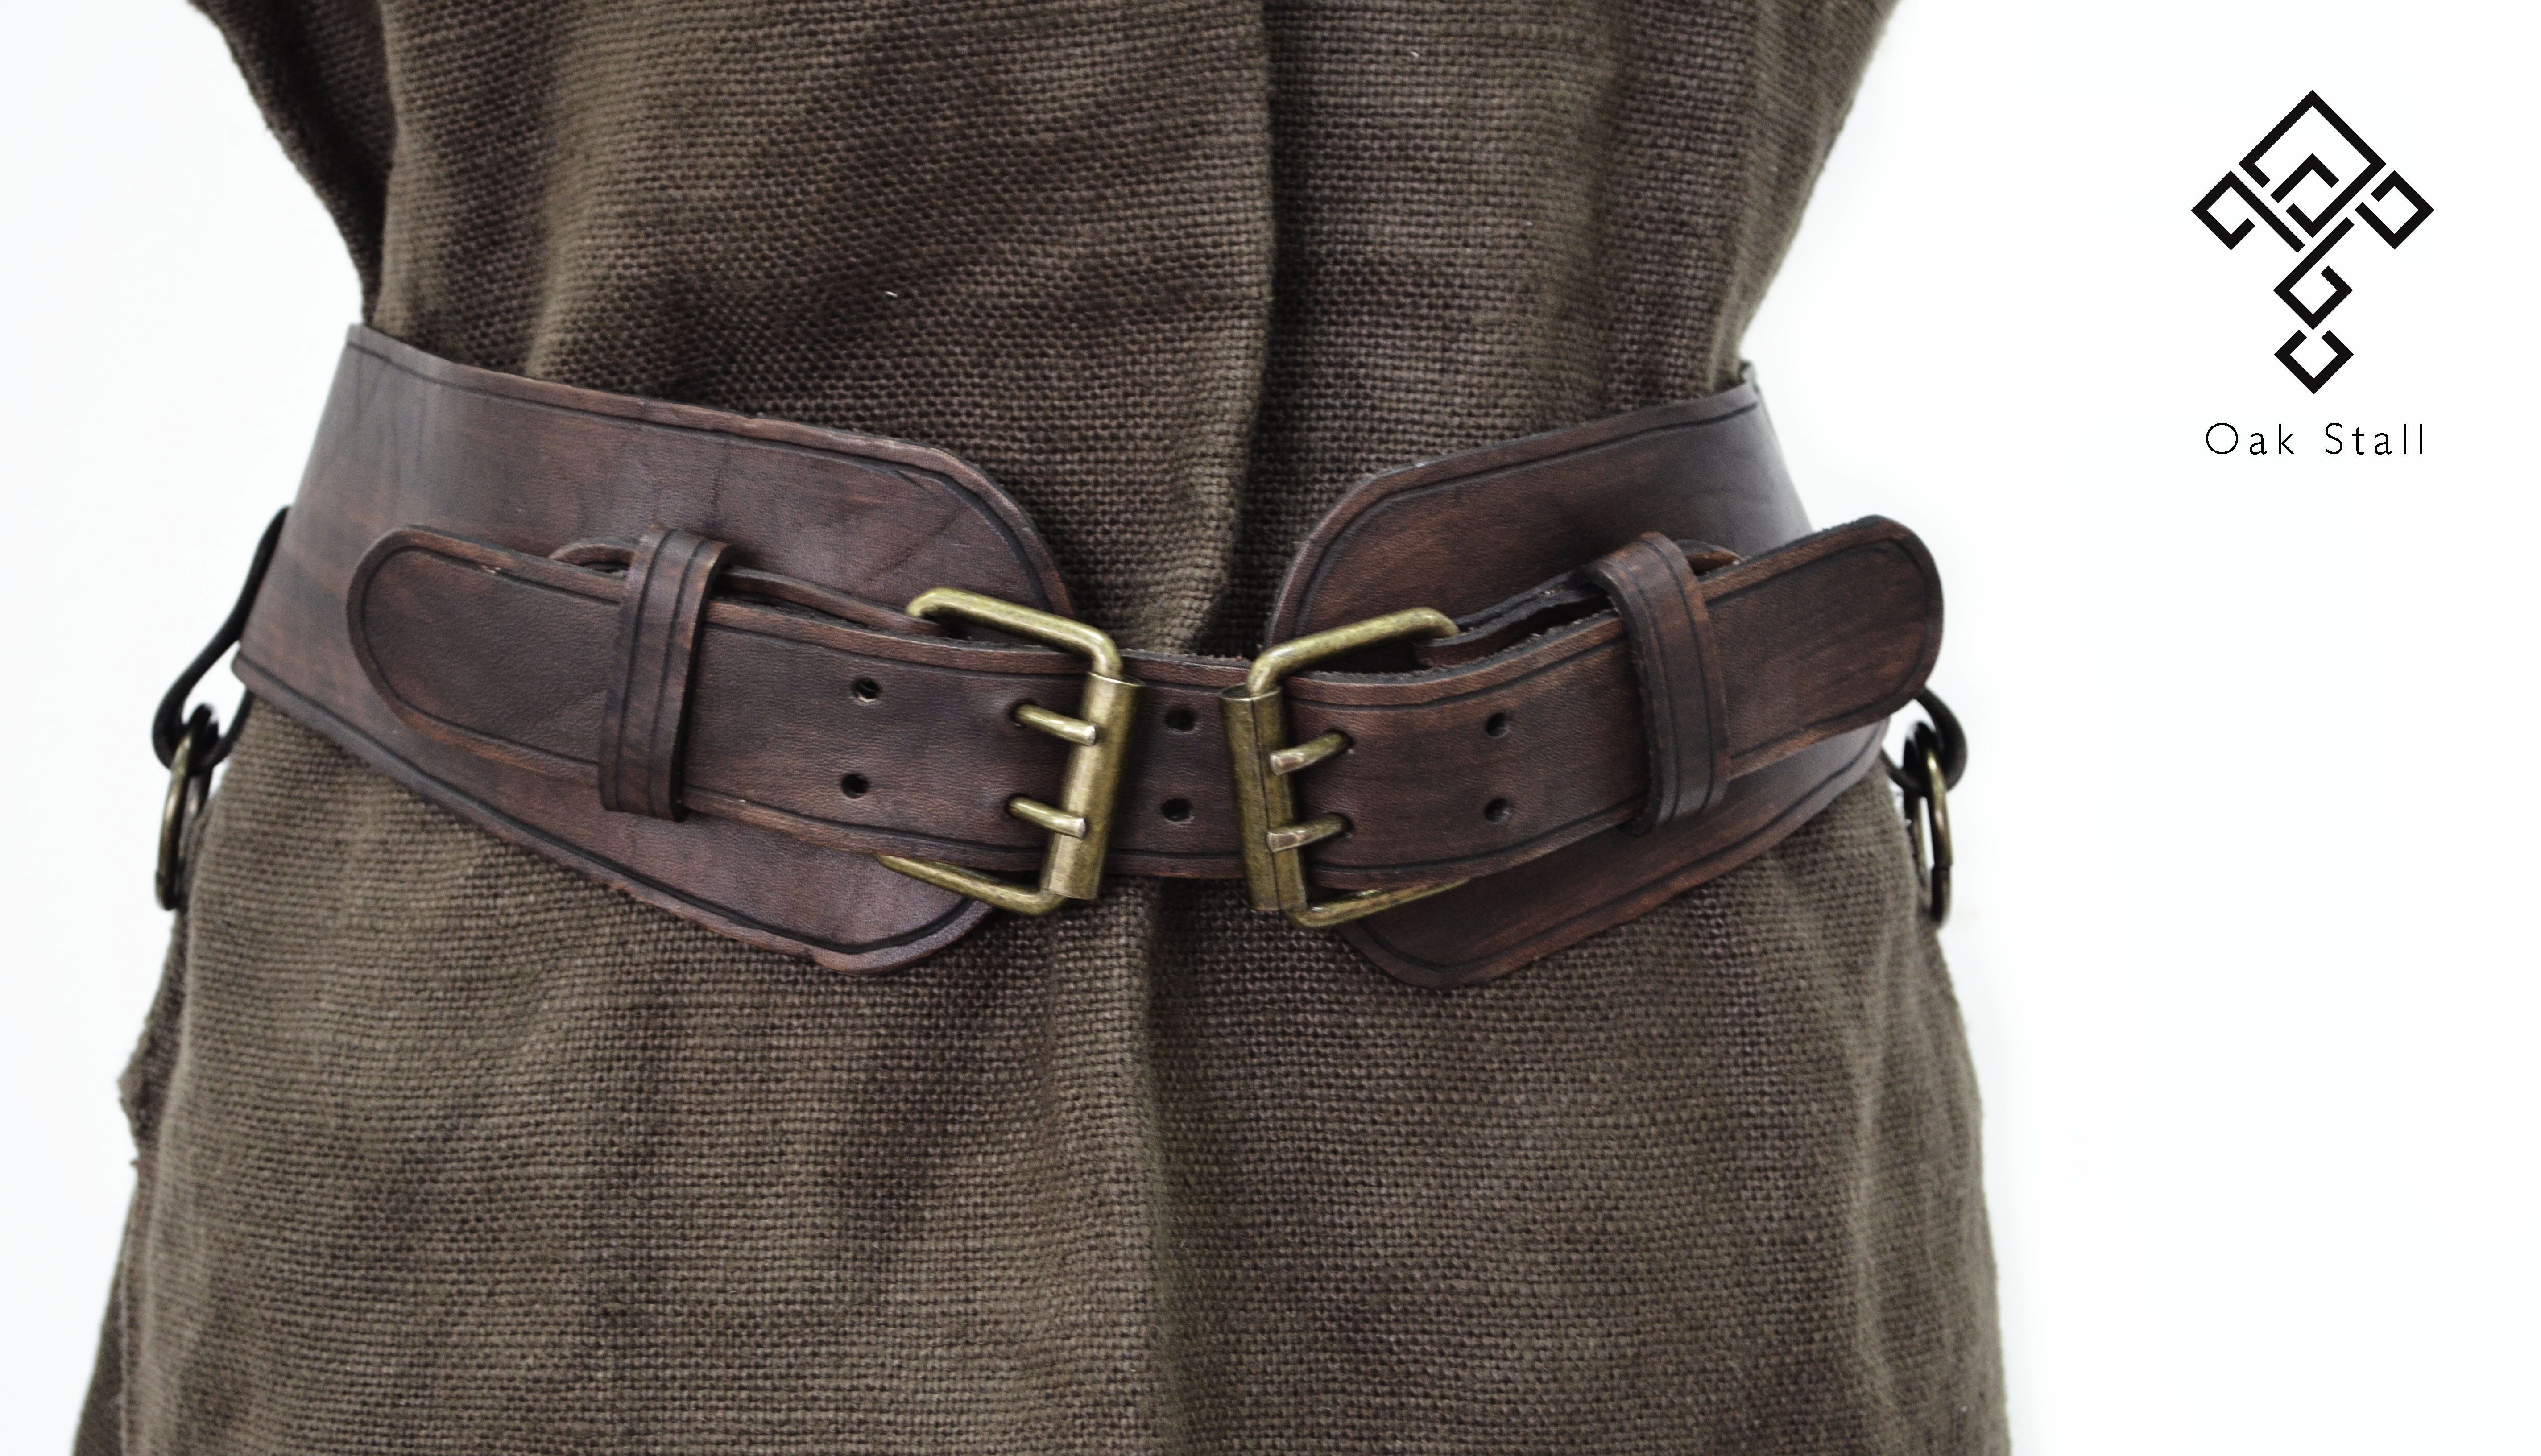 Leather belt #1 Oak Stall by OakStall on DeviantArt